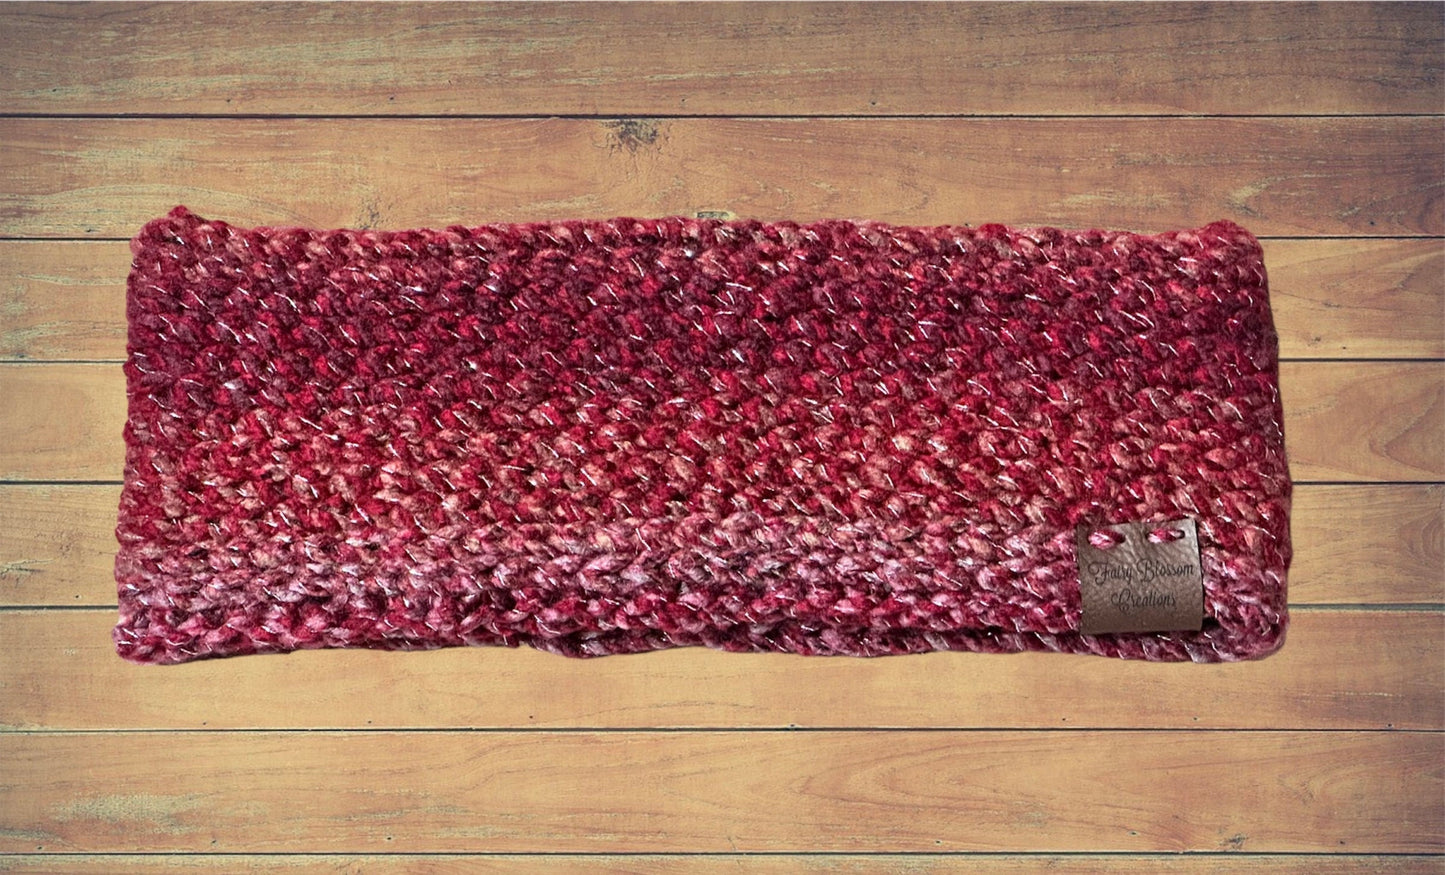 Fairyblossom headband | crochet pdf pattern | knit look